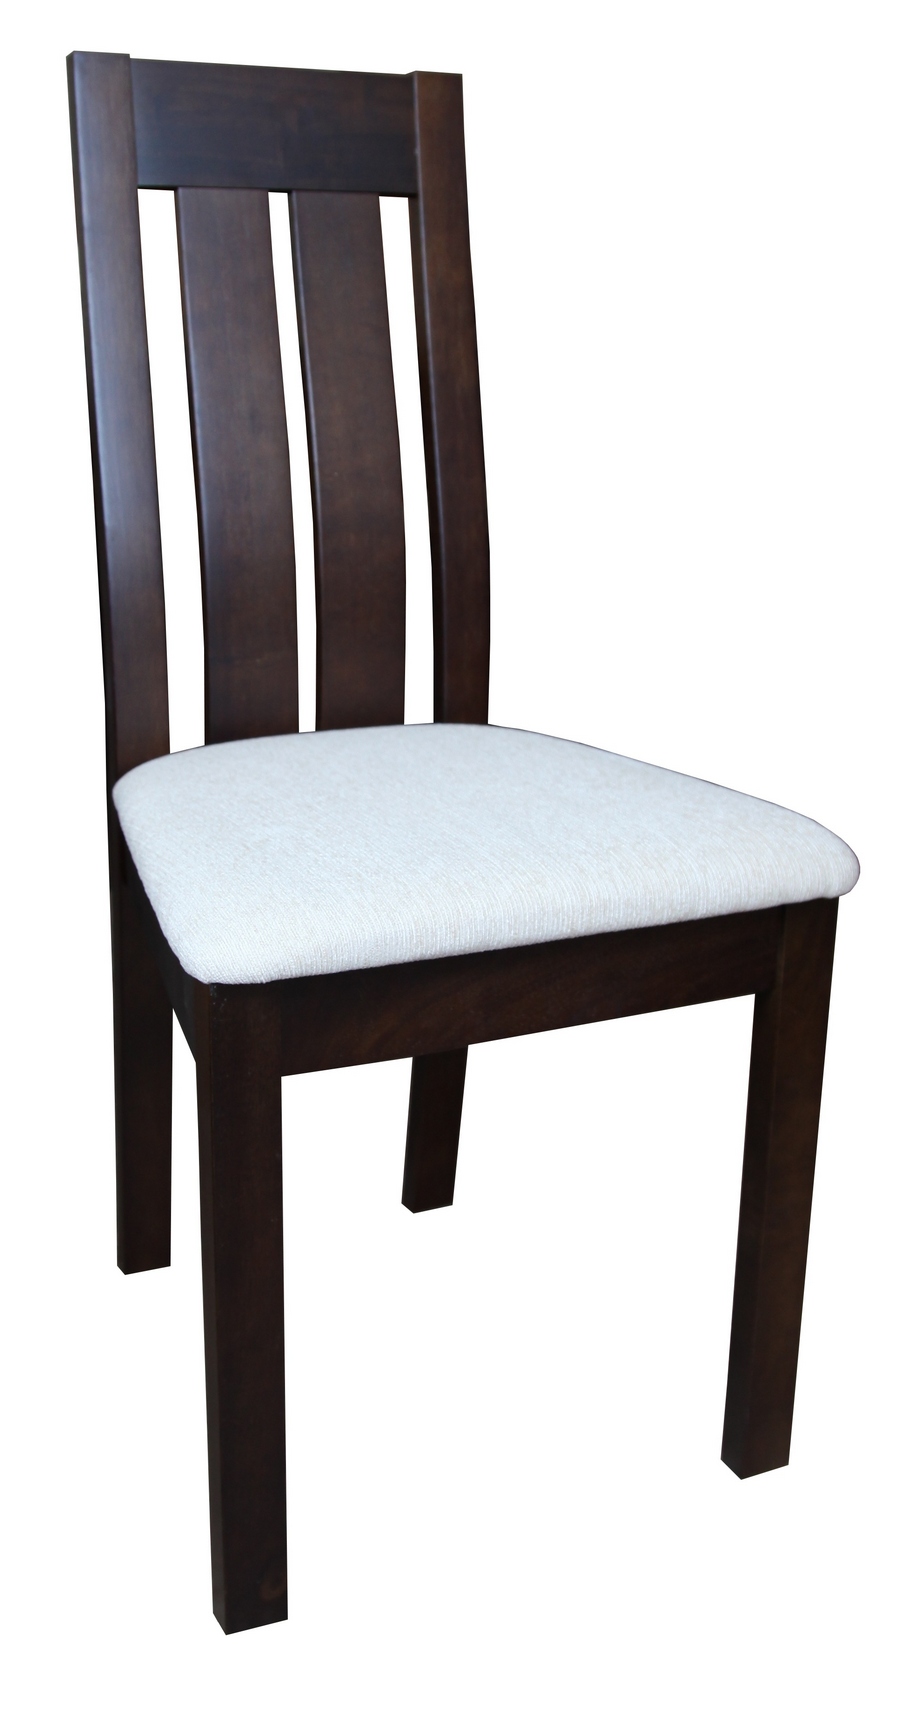 стулья венге с мягким сиденьем